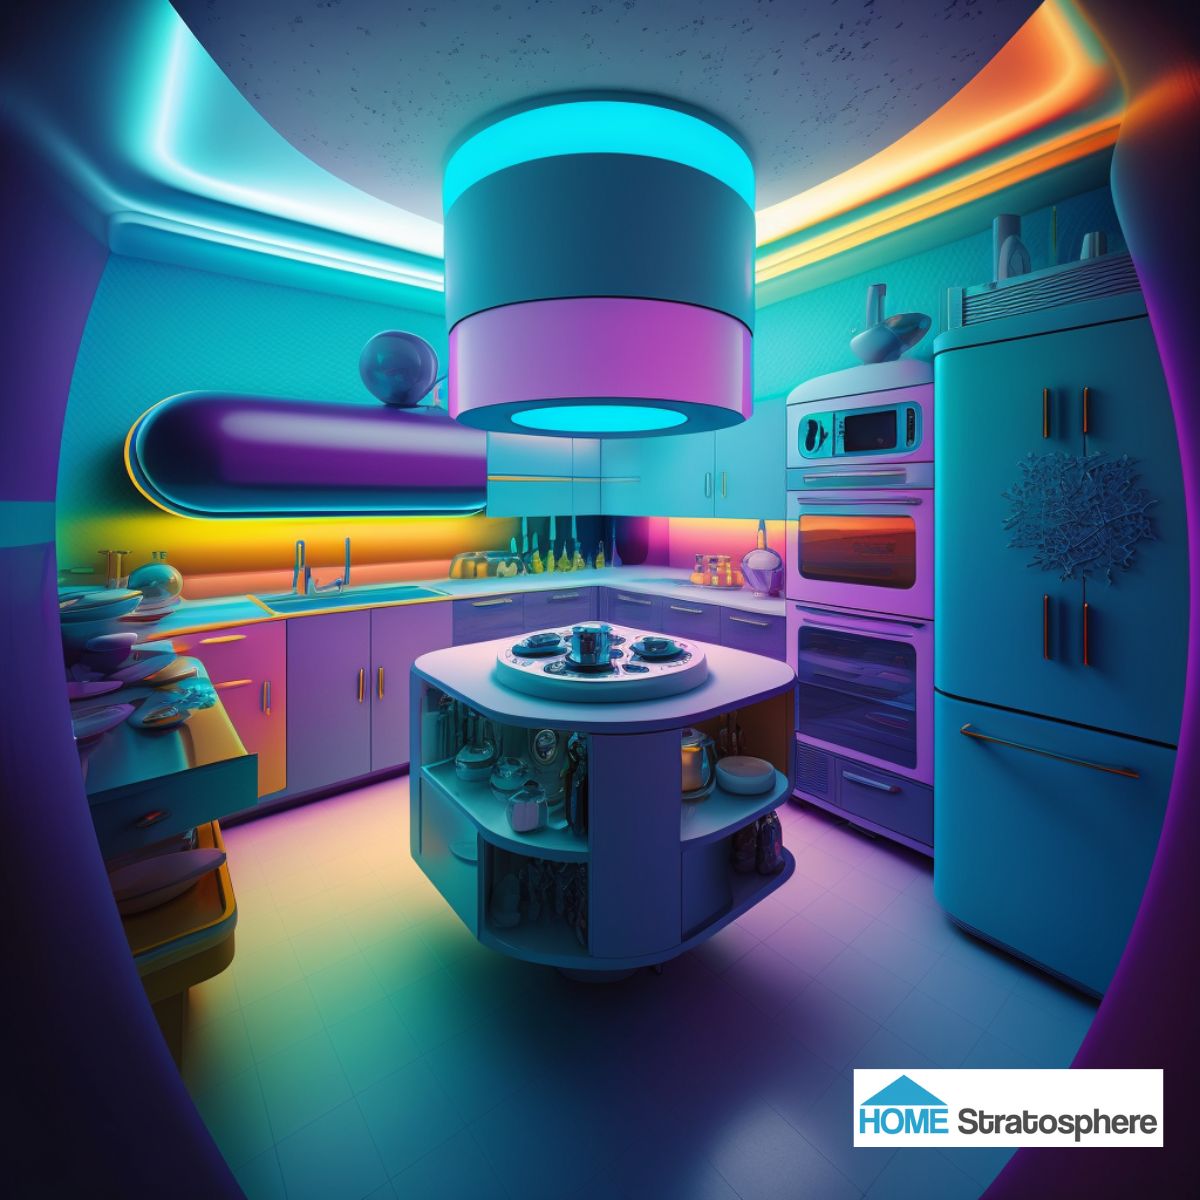 混合了过去几个概念的最佳方面，这个厨房主要是蓝色的，在柜台和后墙周围有引人注目的彩虹色。甚至连布局都为人工智能做得很好，包括橱柜空间等必需品，以及带有顶灯的环形岛等受欢迎的额外设施。